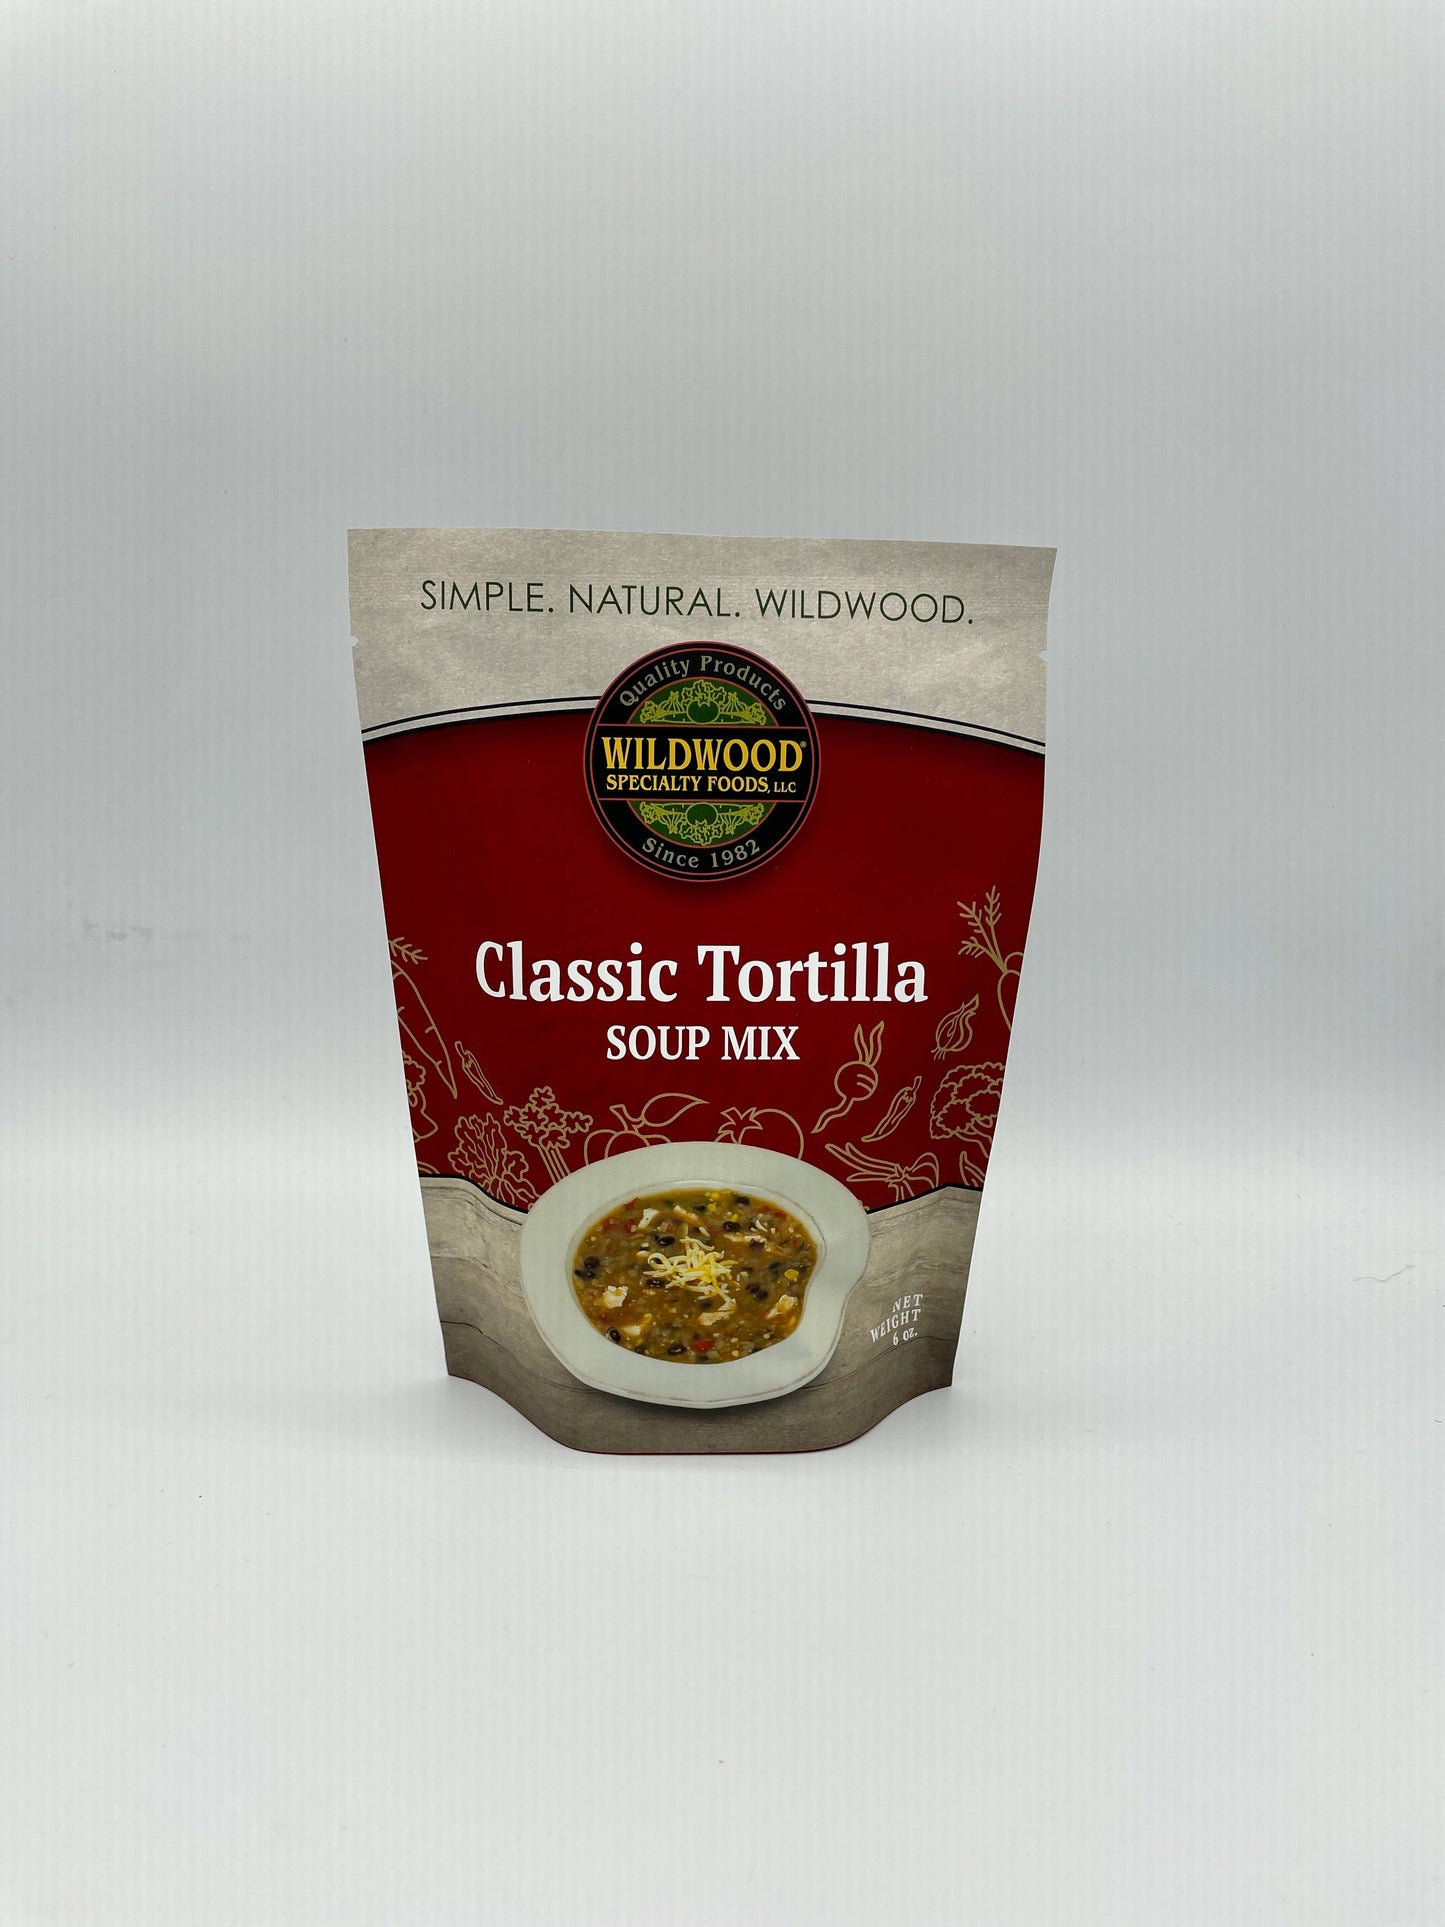 Classic Tortilla Soup Mix